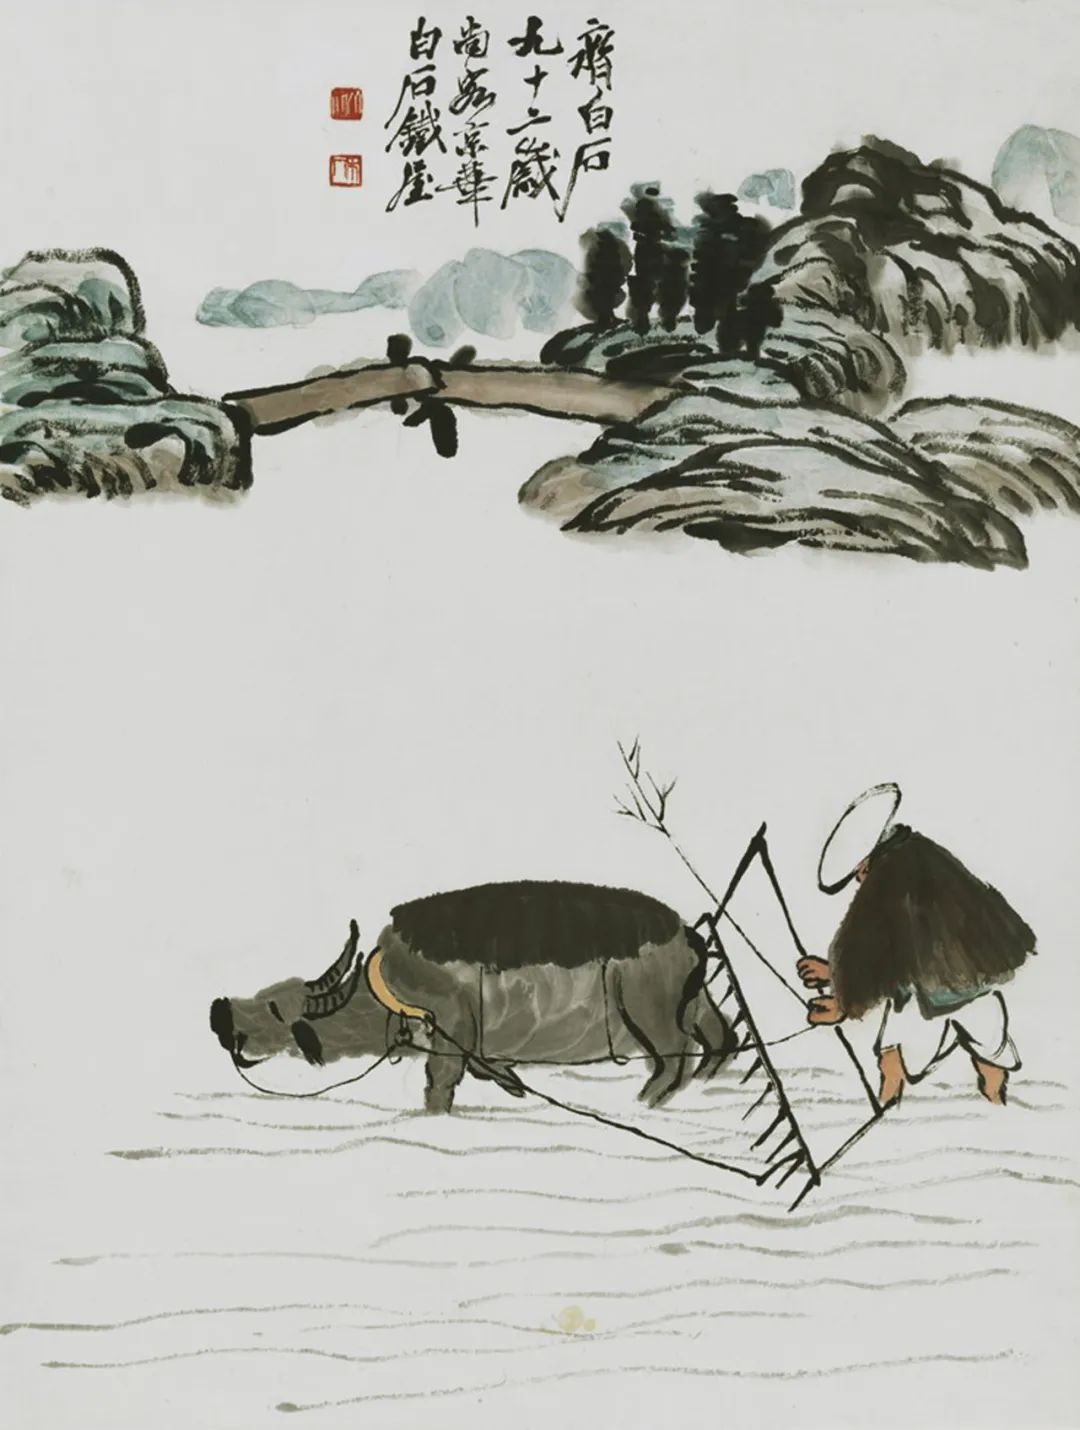 齐白石 《农耕图》（农耕）  纸本设色 中国画 69cm×52.7cm 1952年 中国美术馆藏